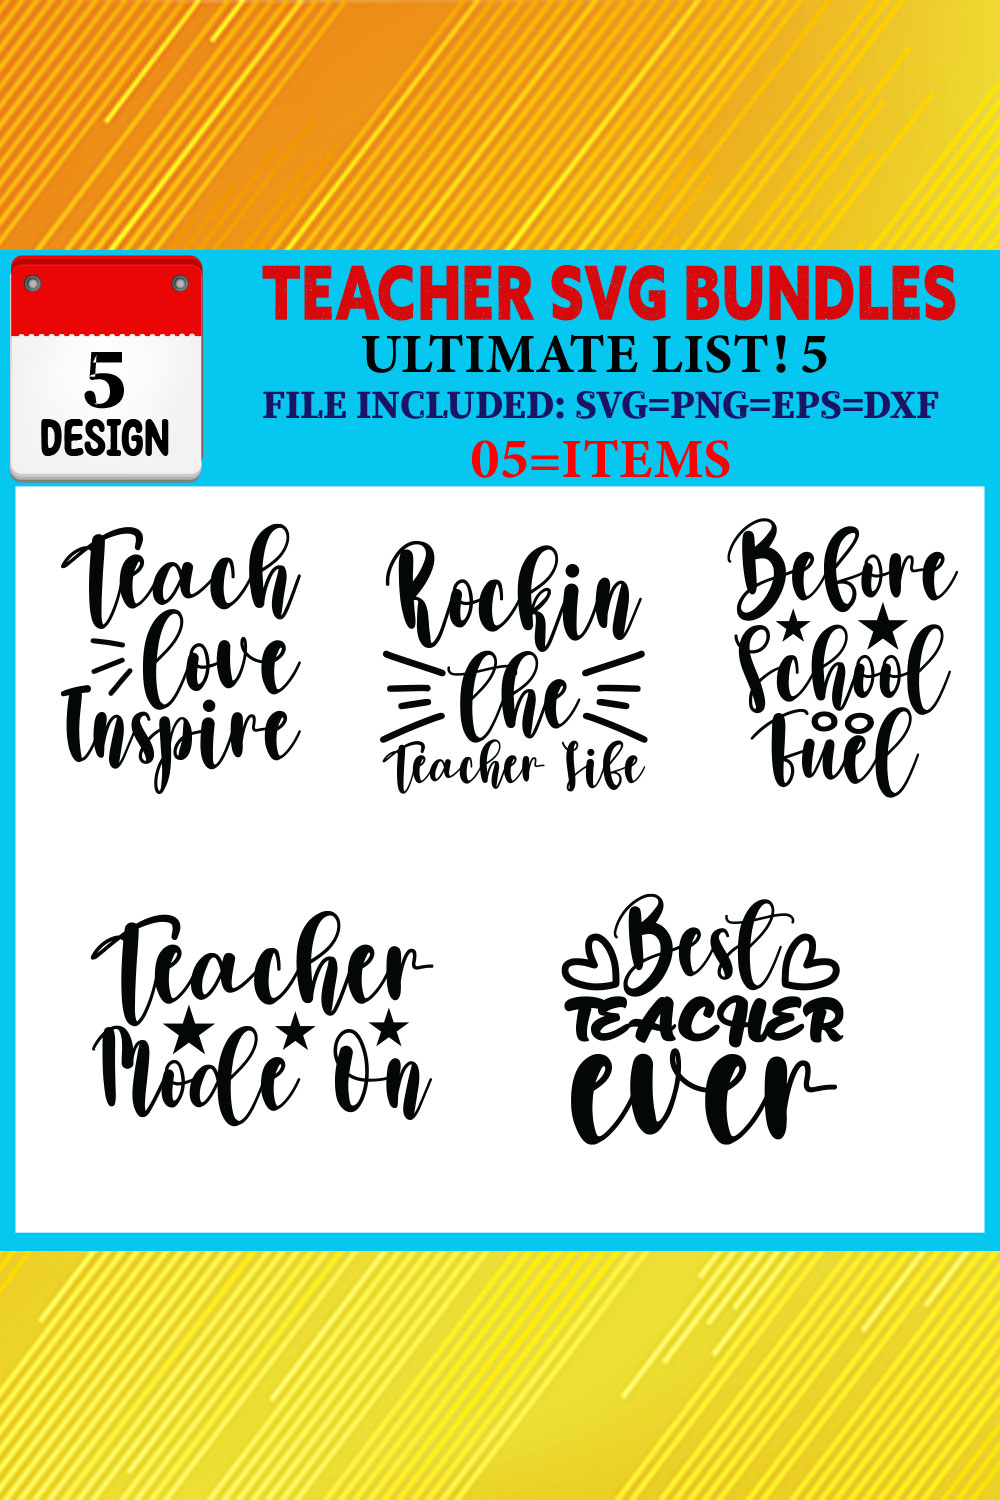 Teacher T-shirt Design Bundle Vol-08 pinterest preview image.